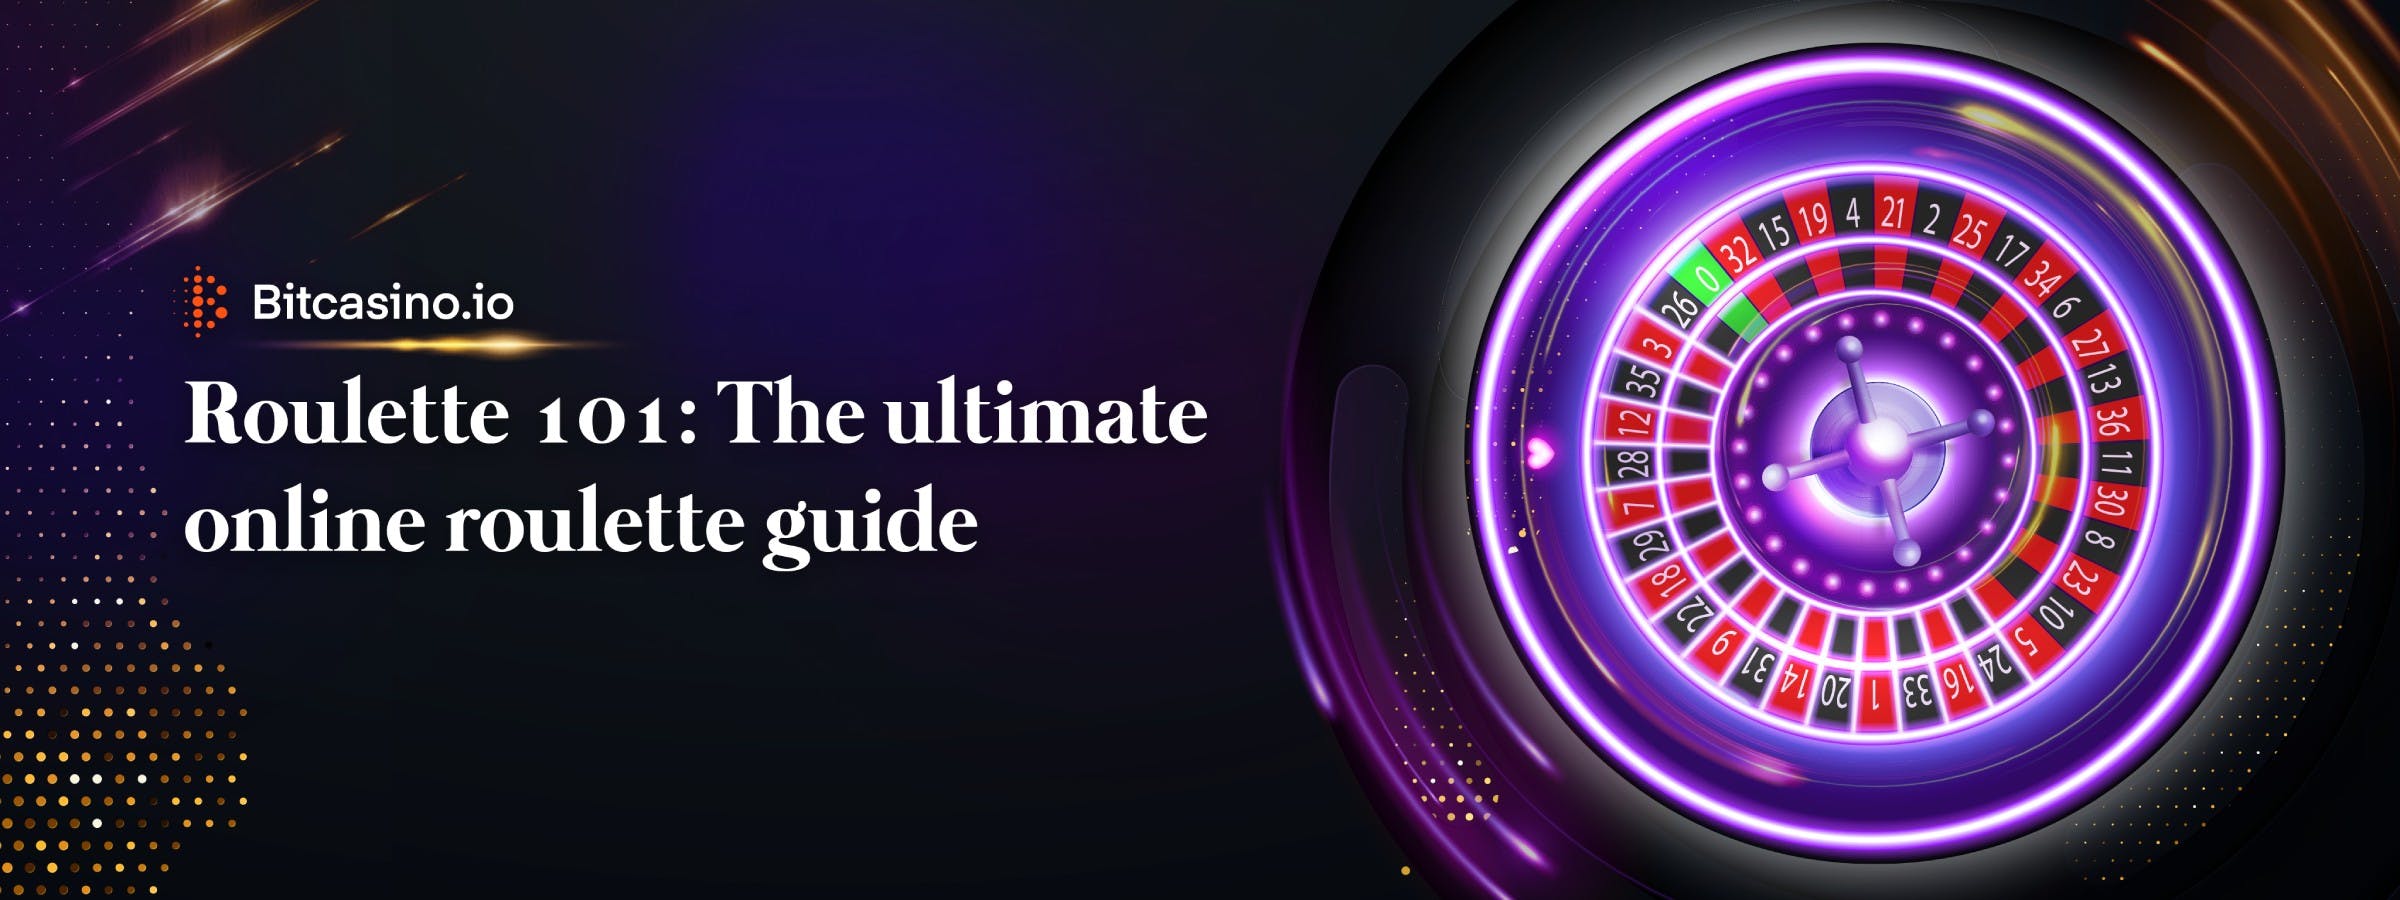 Roulette 101 : Le guide ultime de la roulette en ligne